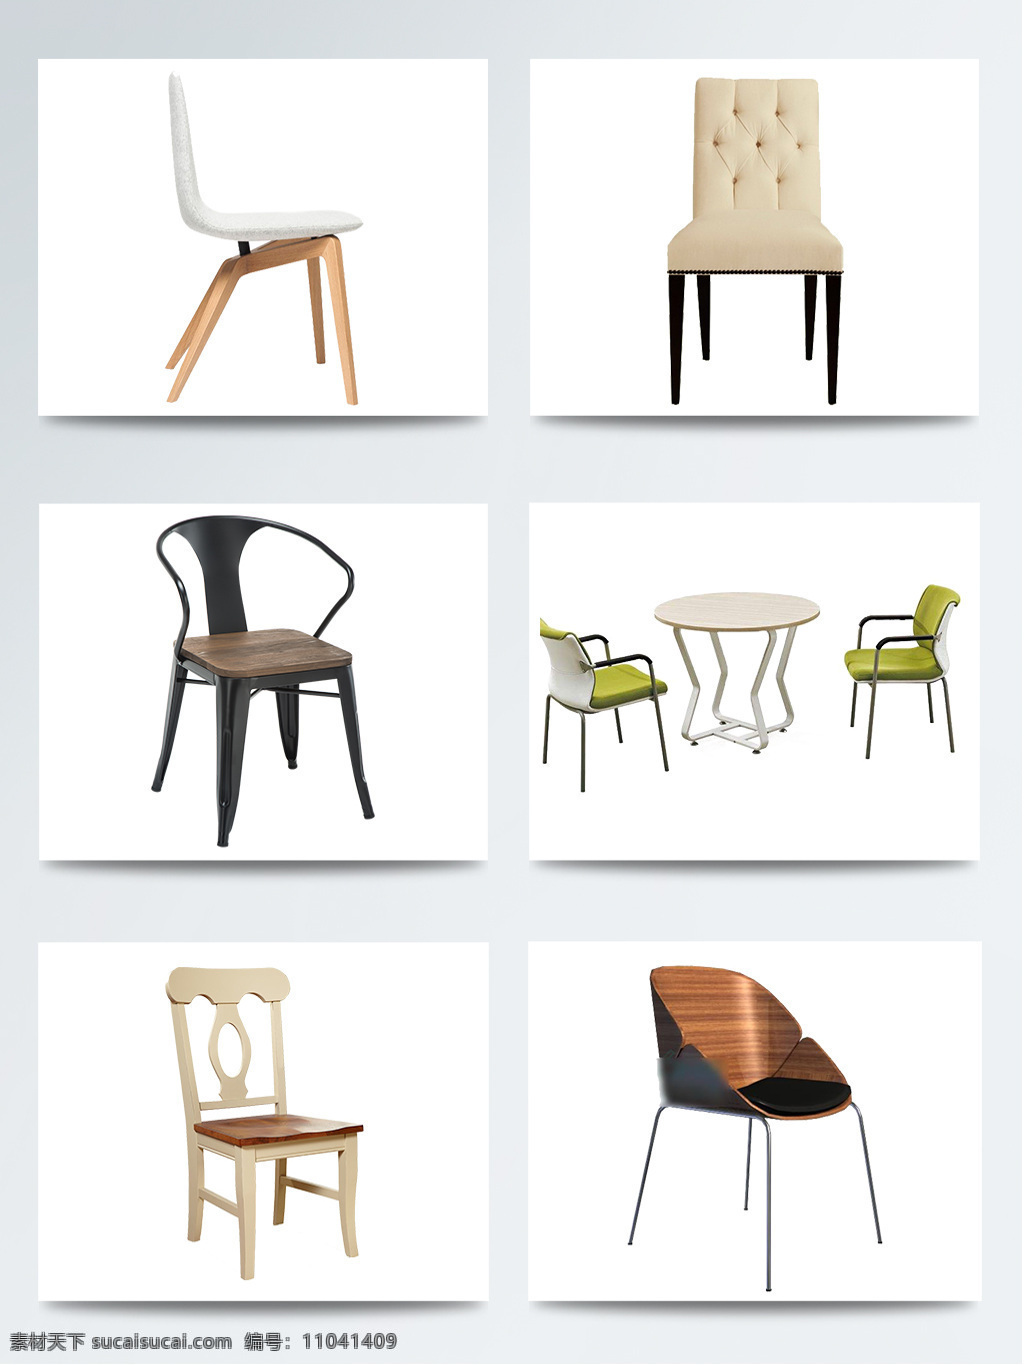 实物椅子创意 产品设计 创意 凳子 家居 家装 家装节 简约沙发 生活椅子 新年惠 椅子 用品